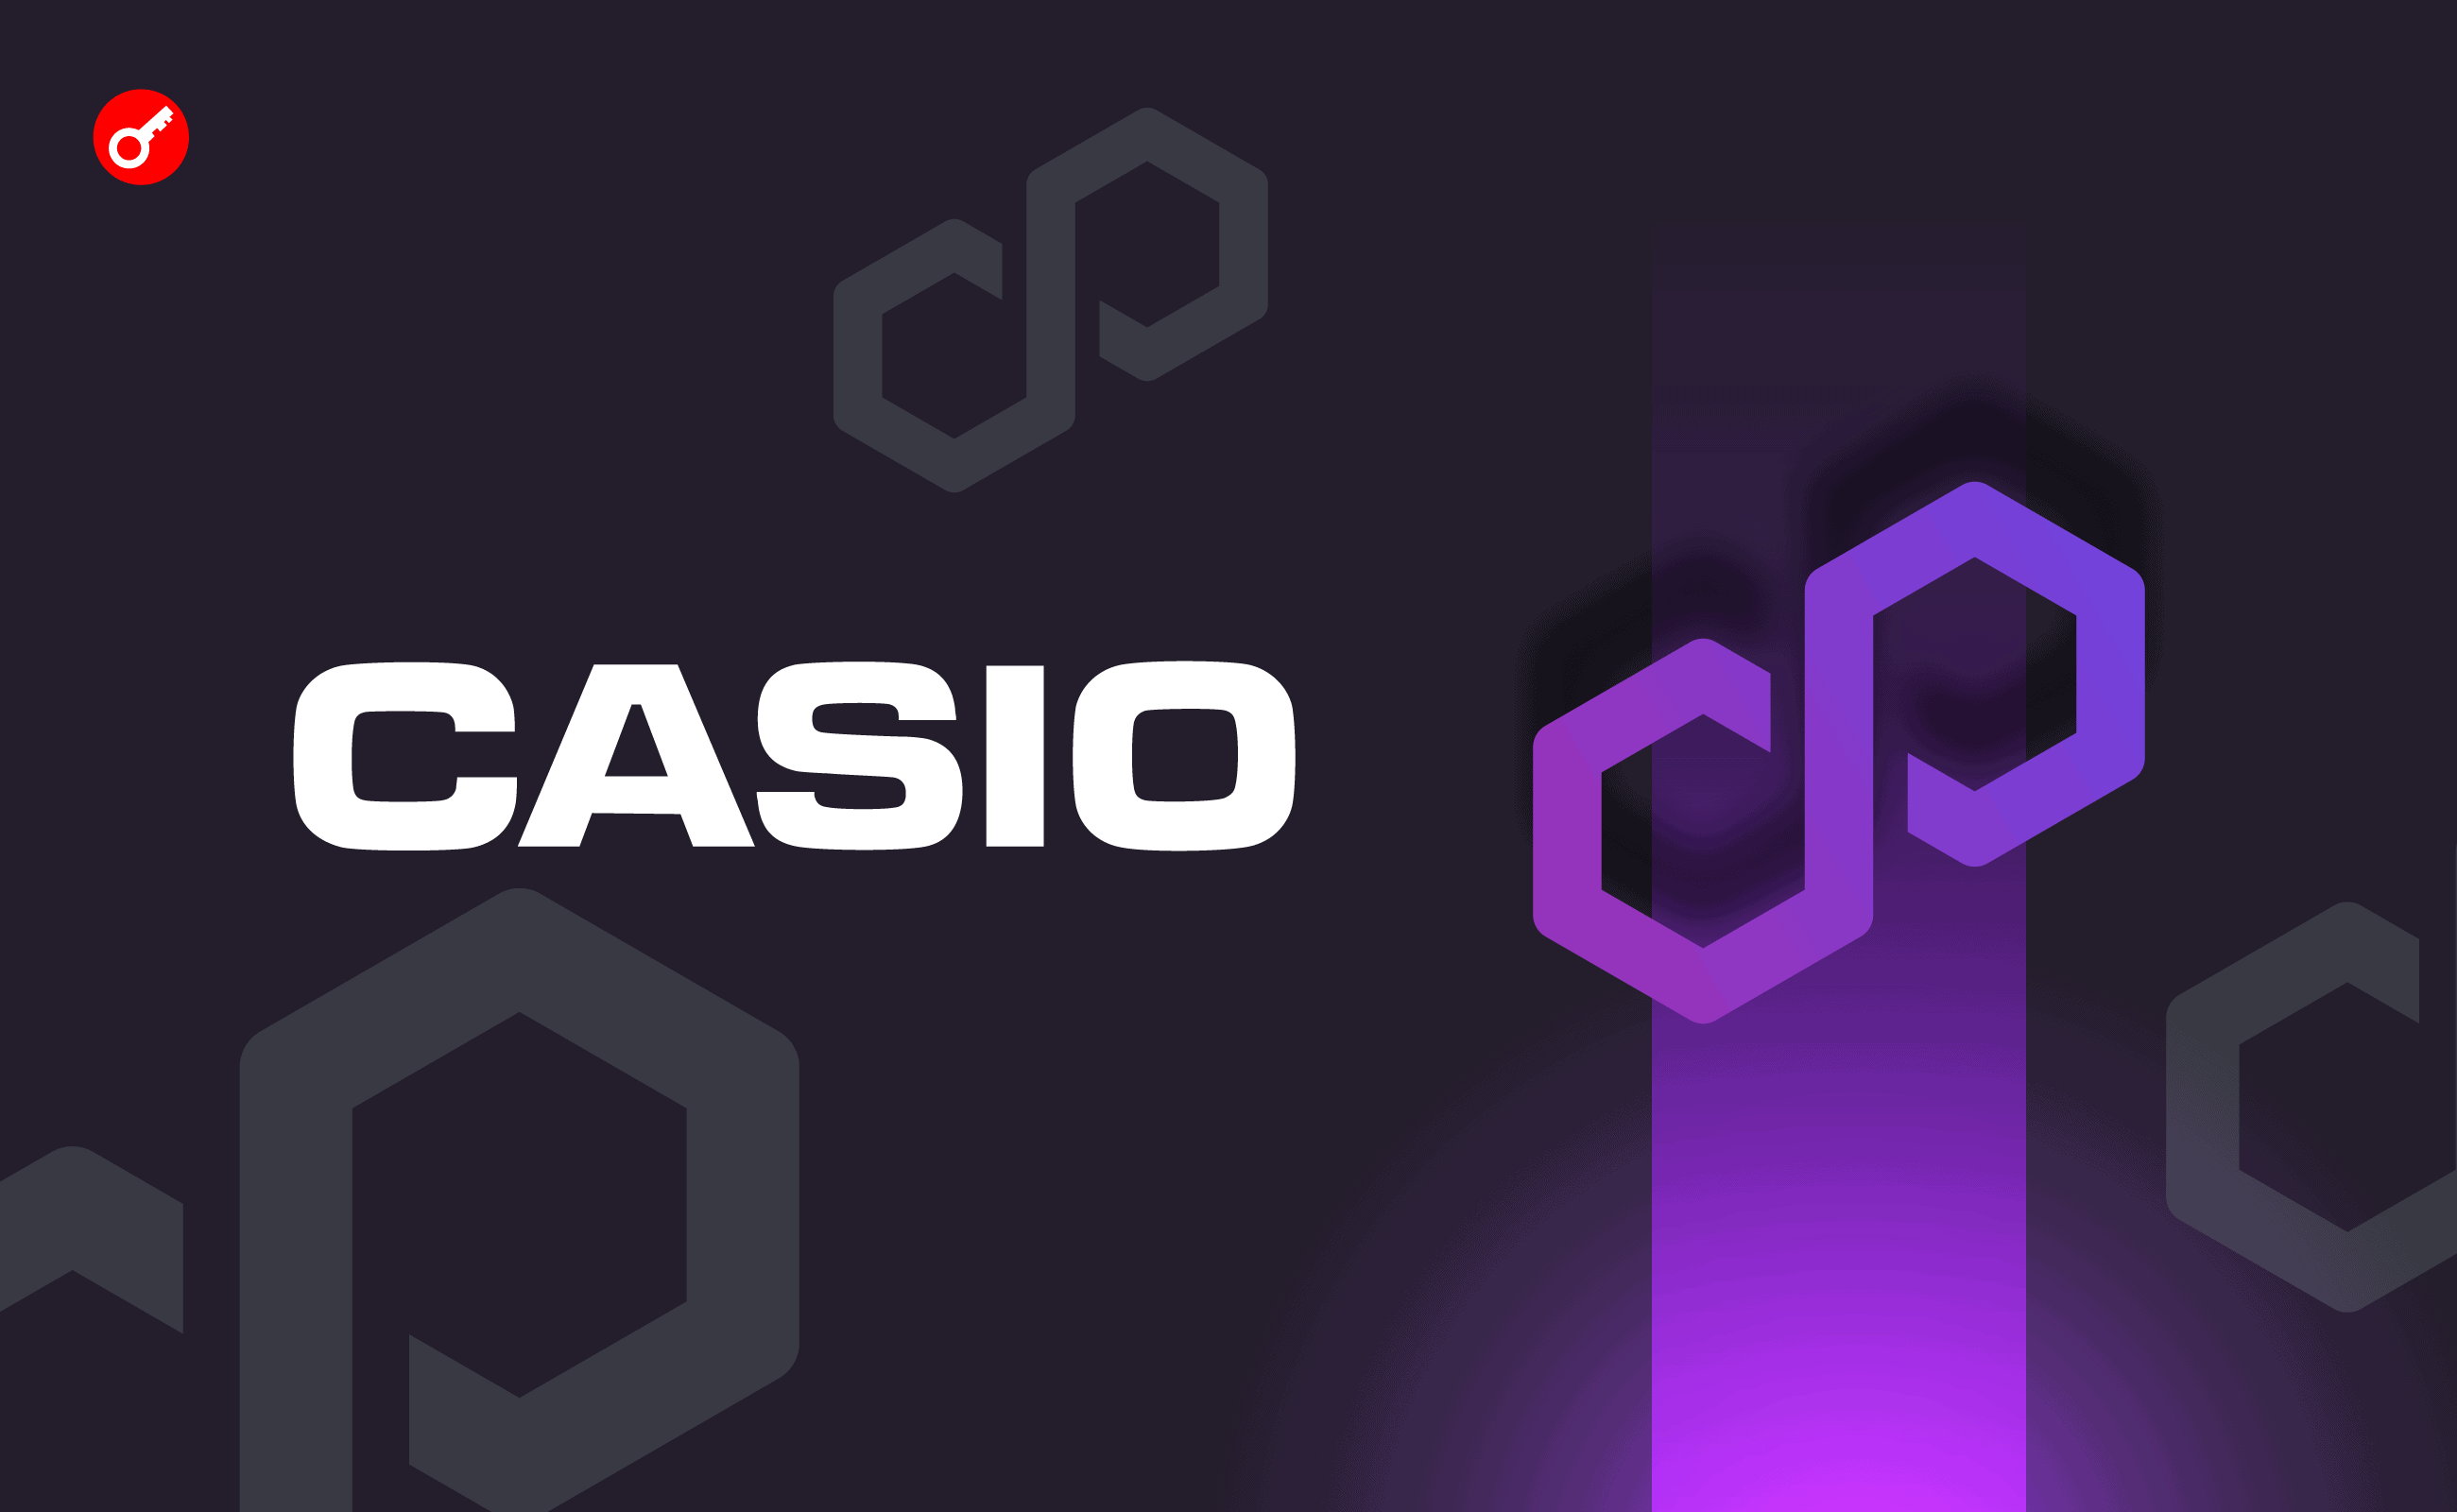 Japoński producent elektroniki Casio ogłosił partnerstwo z Polygon Labs. Główny kolaż wiadomości.